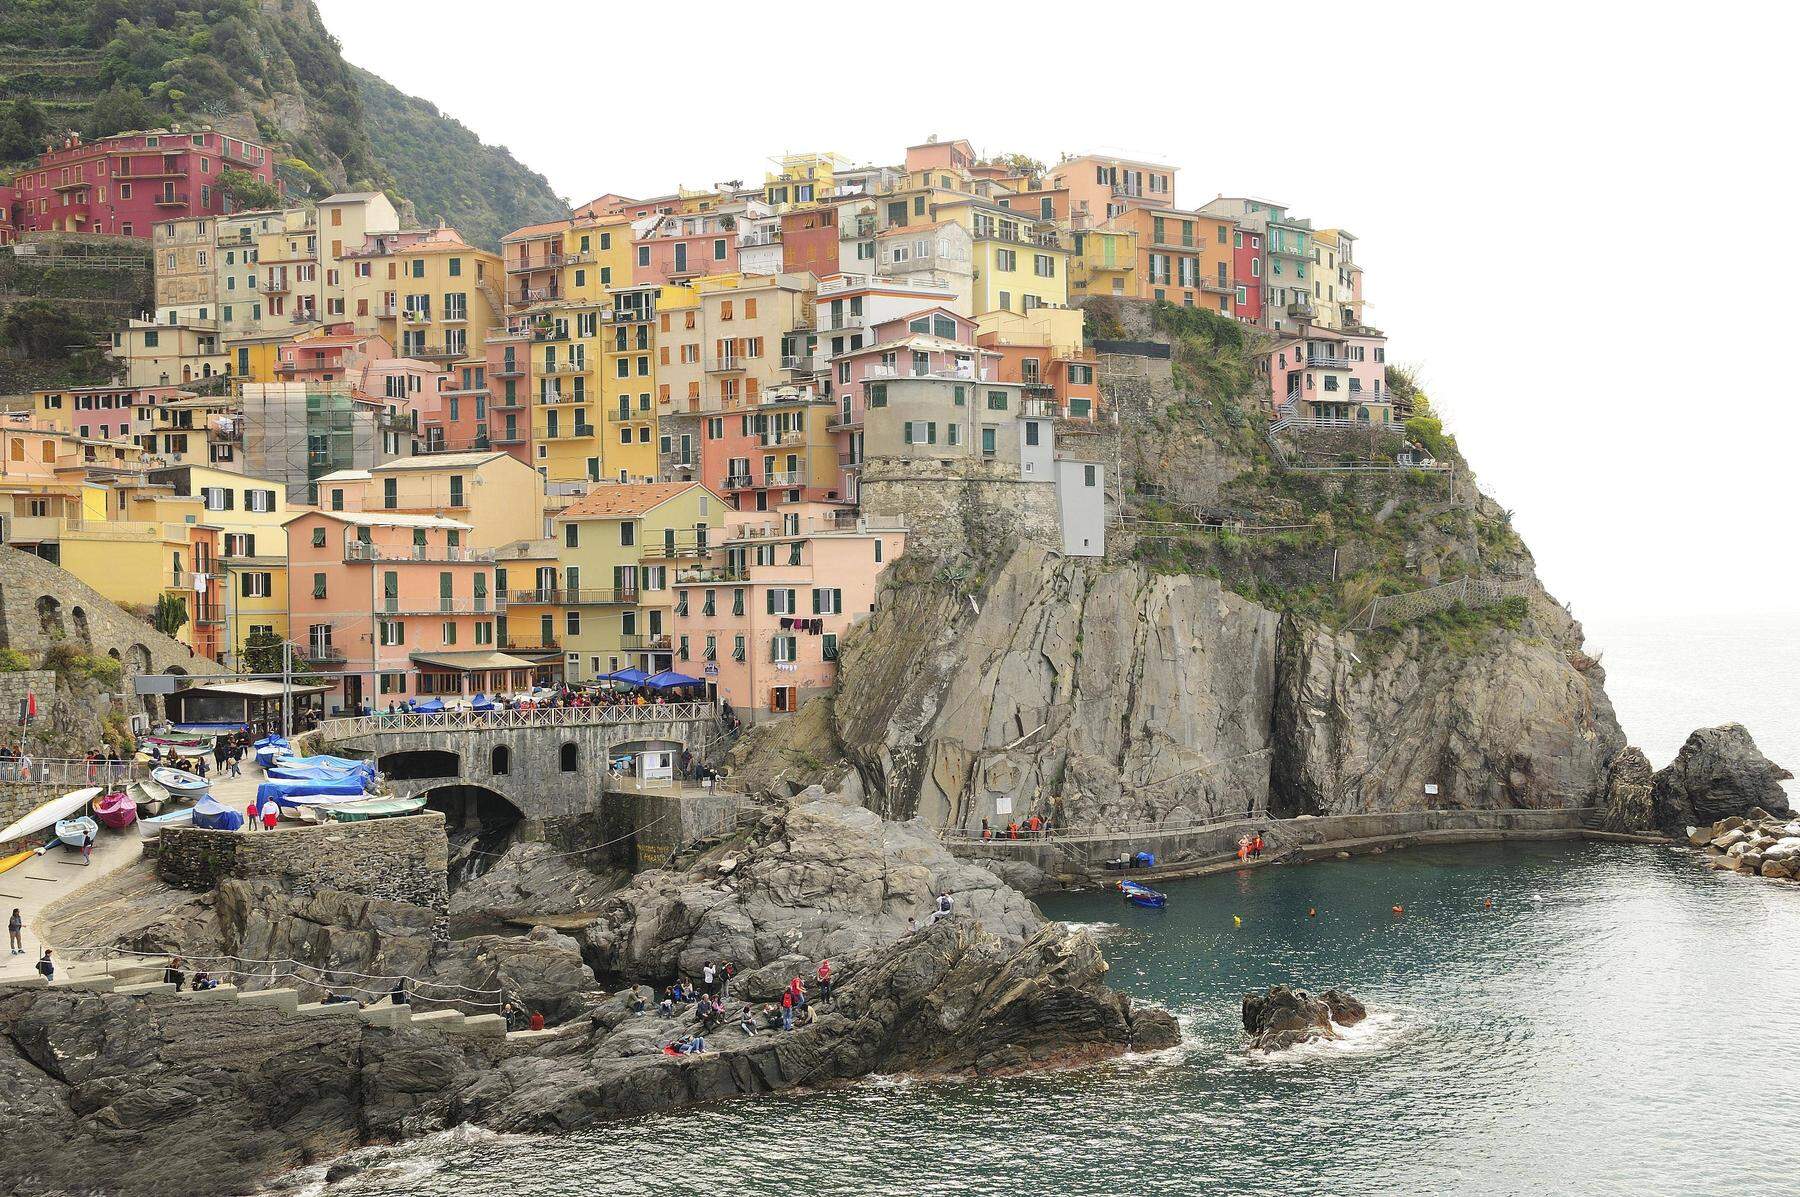 Wanderweg in Italiens ?Cinque Terre? erhlt Einbahnregelung